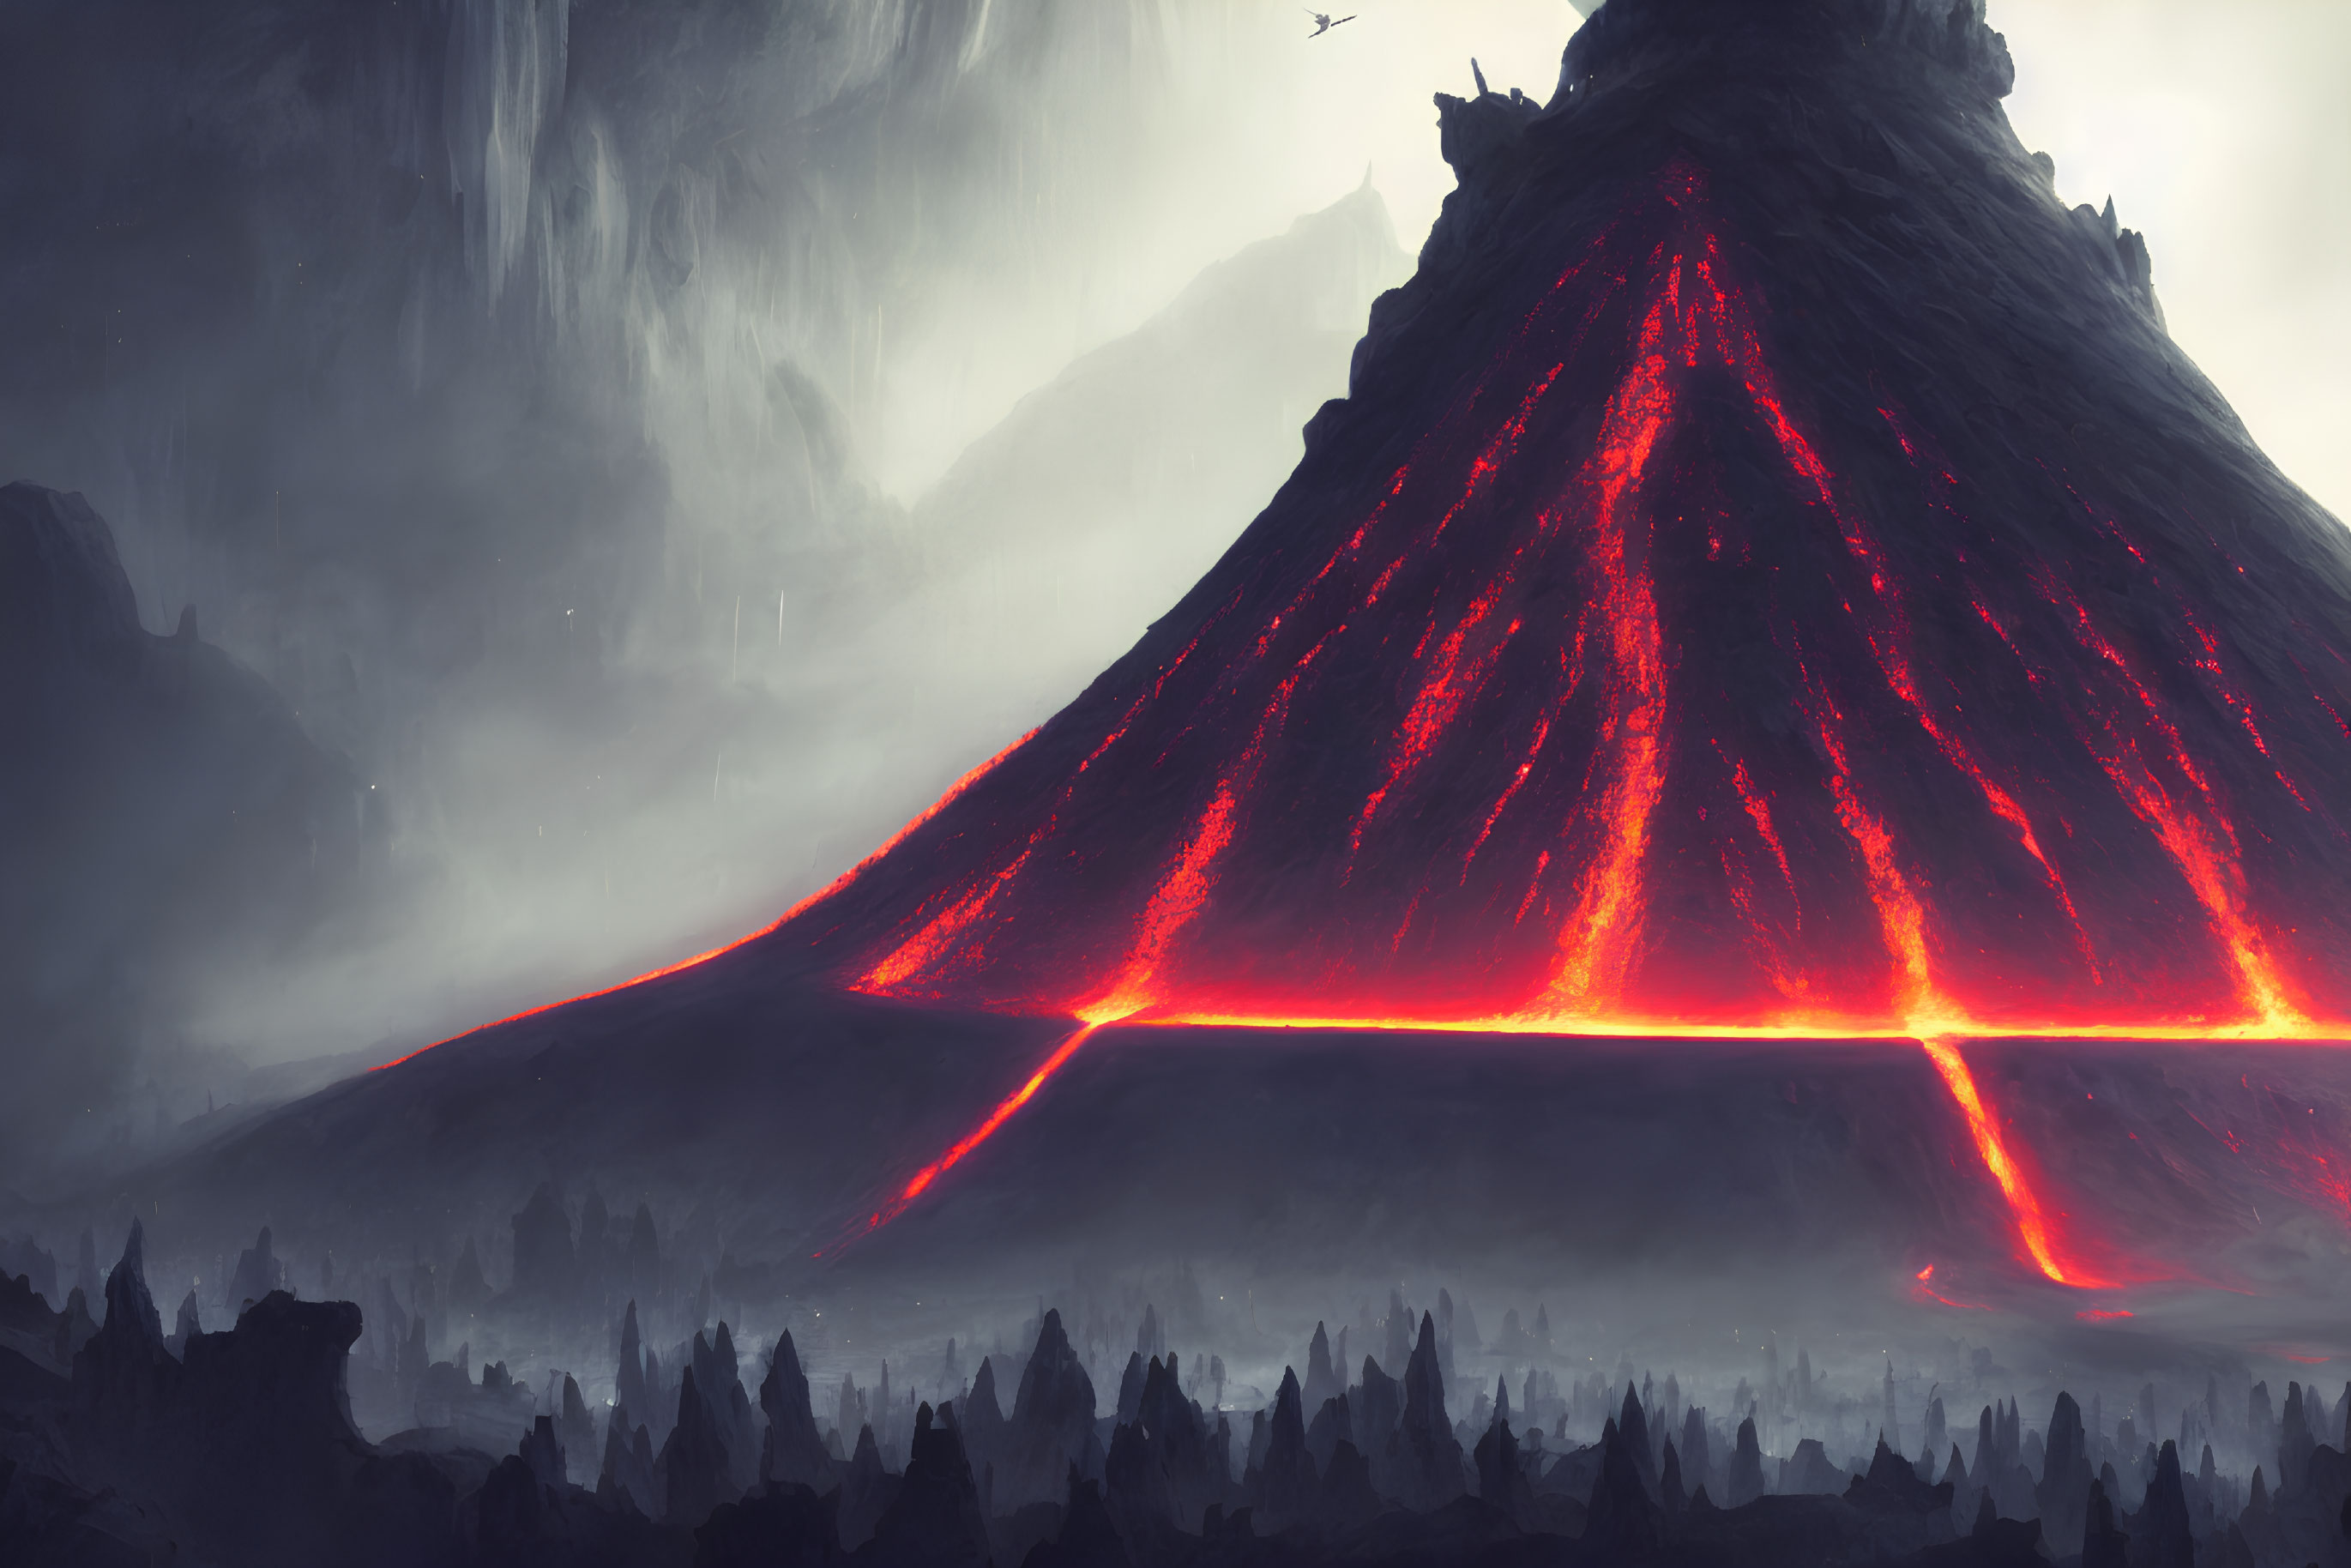 Volcano erupting with fiery lava in dark landscape, lone bird in smoke-filled sky